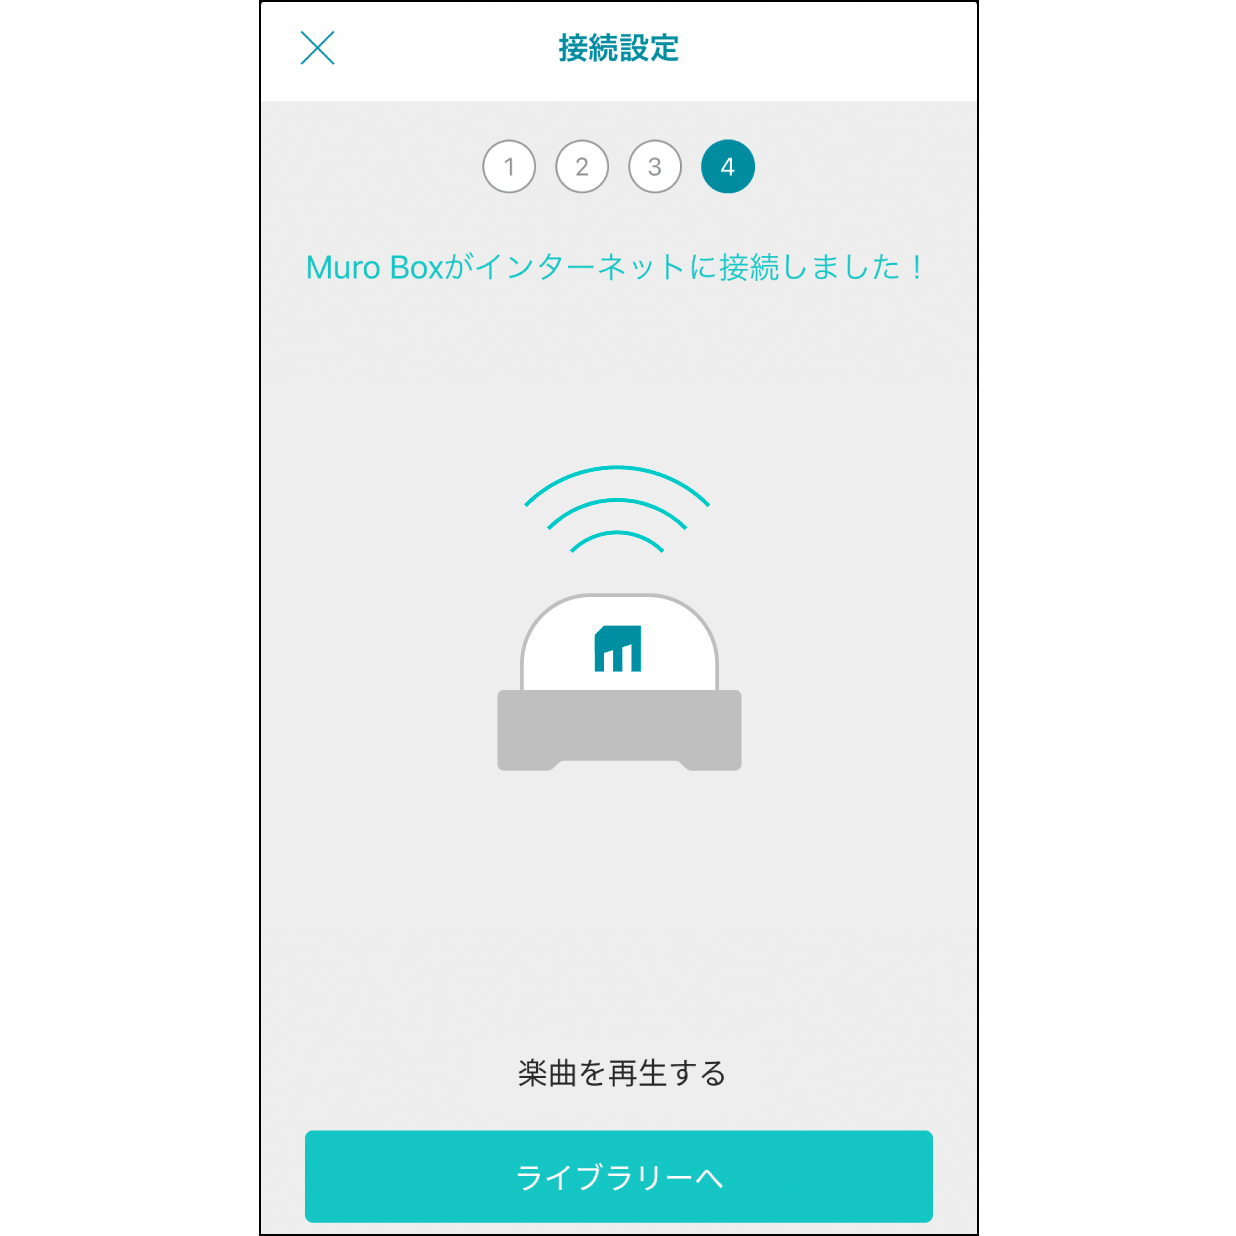 9. Muro Box Wi-Fiに接続接続が完了するとMuro Boxから通知音が鳴り、「Muro Boxに接続完了」と表示されます。その後、「プレイリストに行く」をクリックし、曲を再生できます。